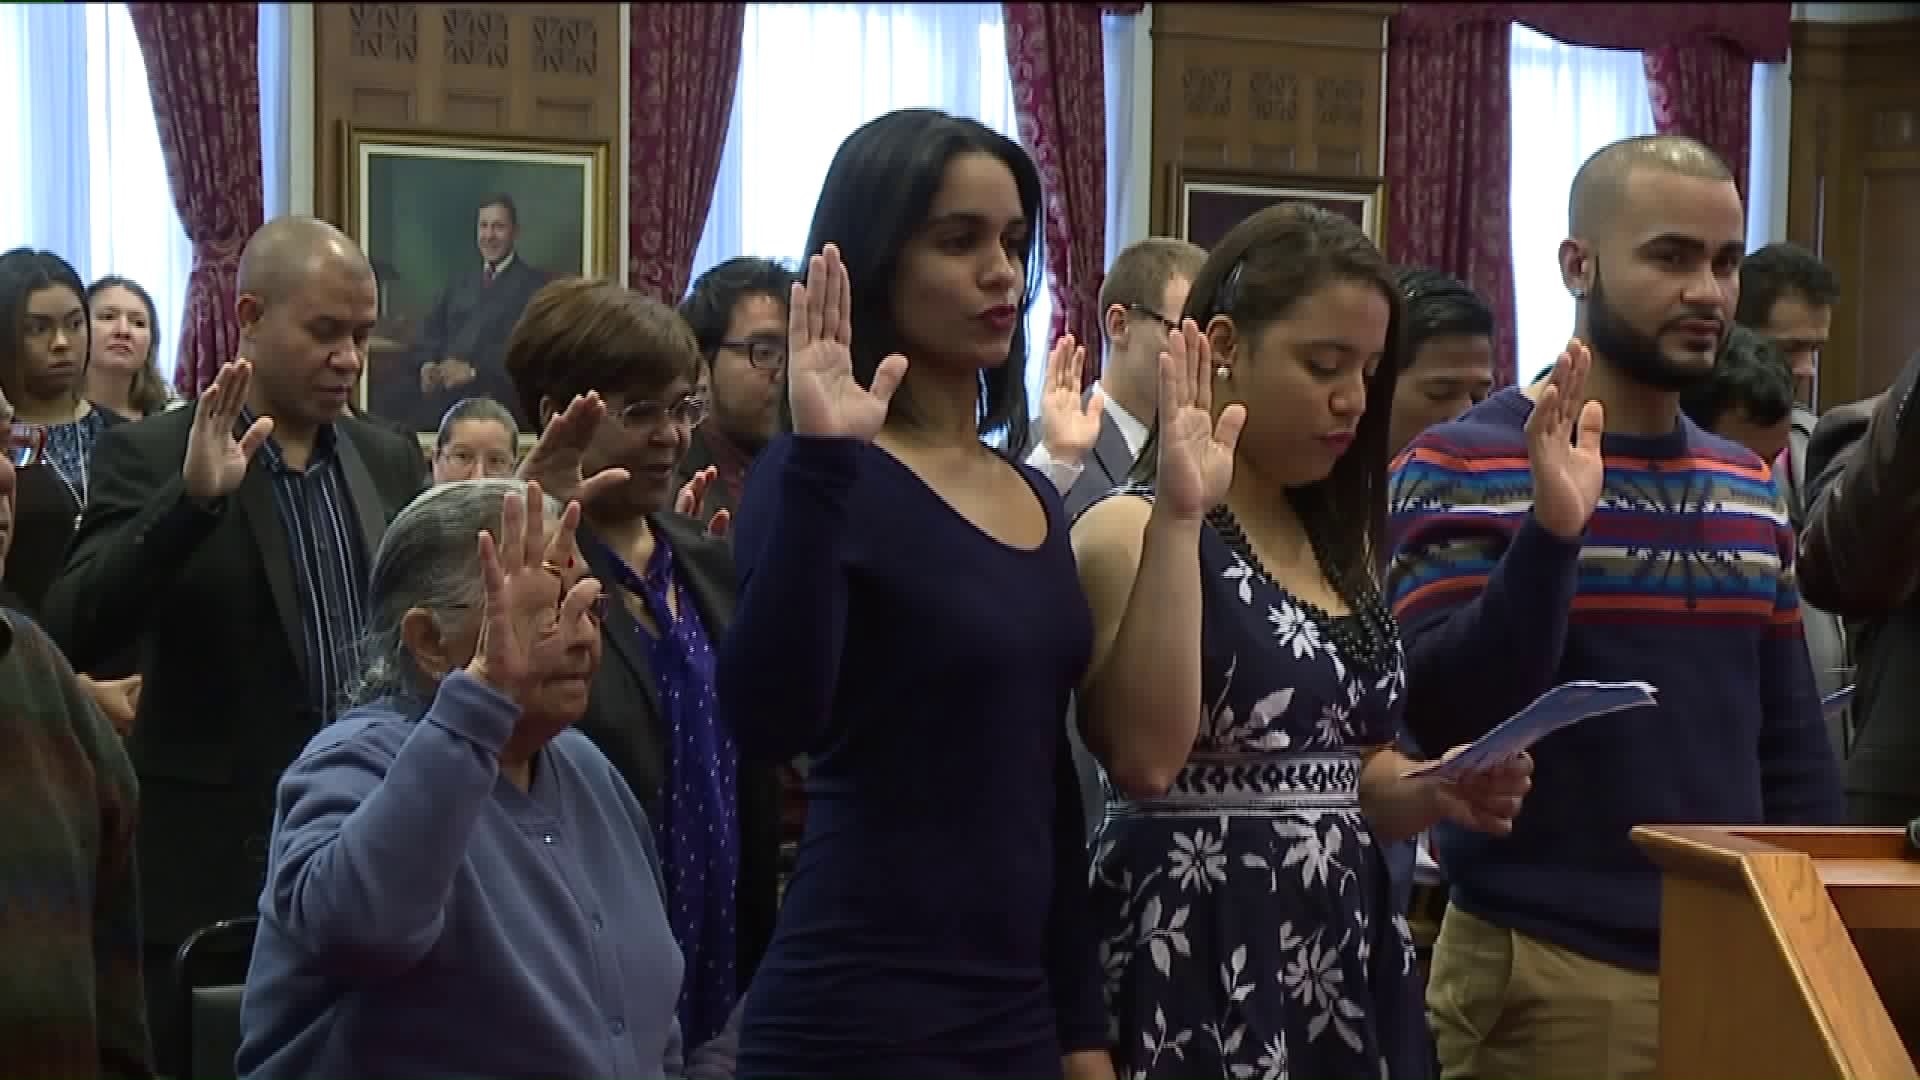 Two Dozen New U.S. Citizens Participate In Naturalization Ceremony In Scranton